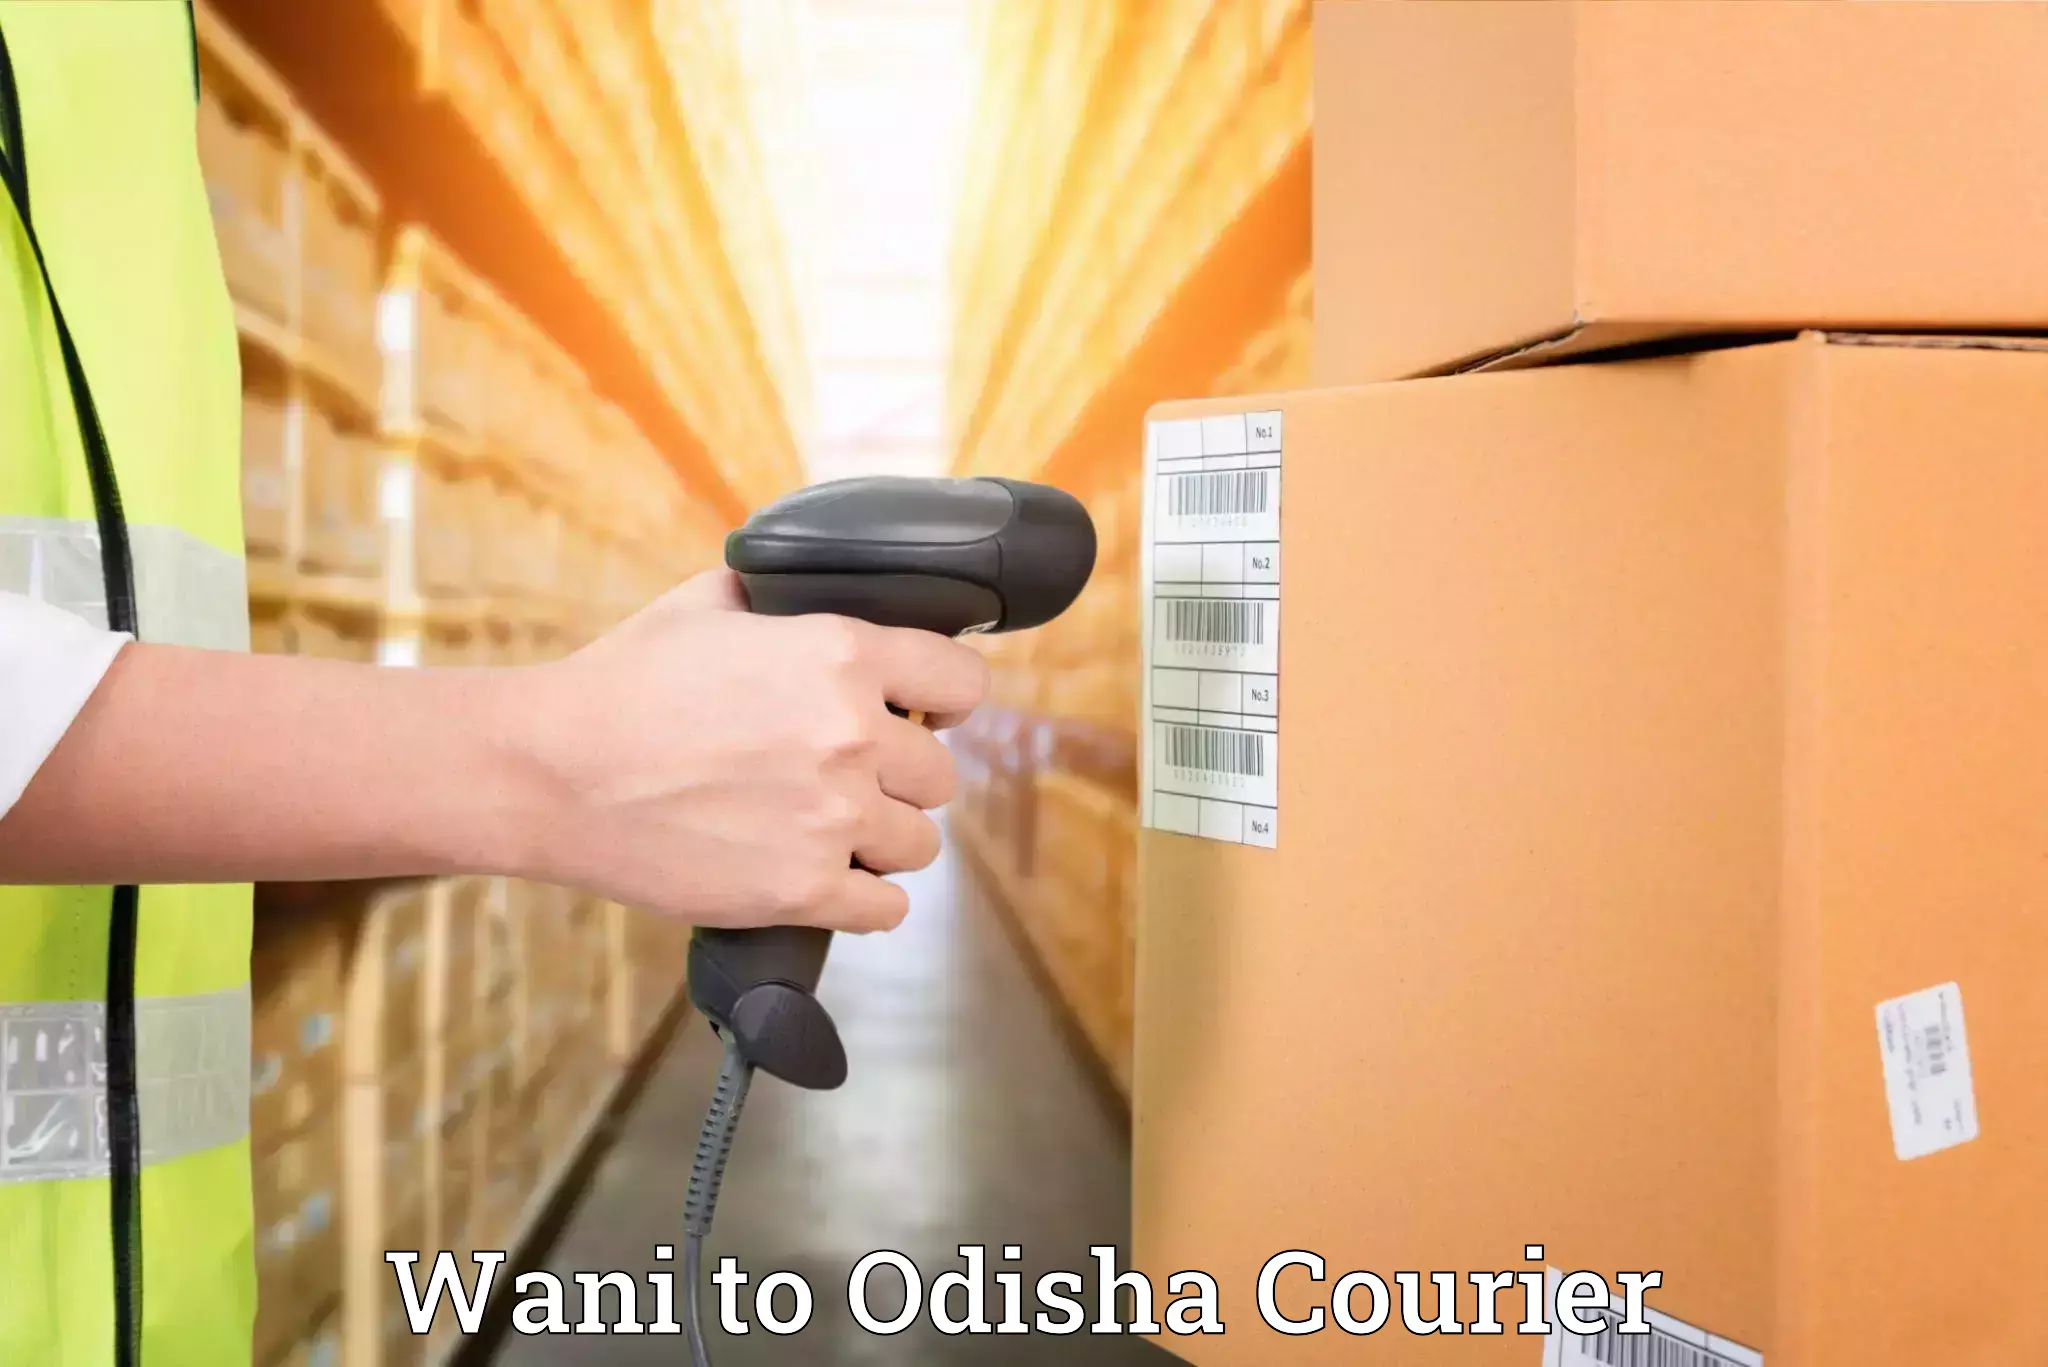 Personalized relocation plans Wani to Odisha